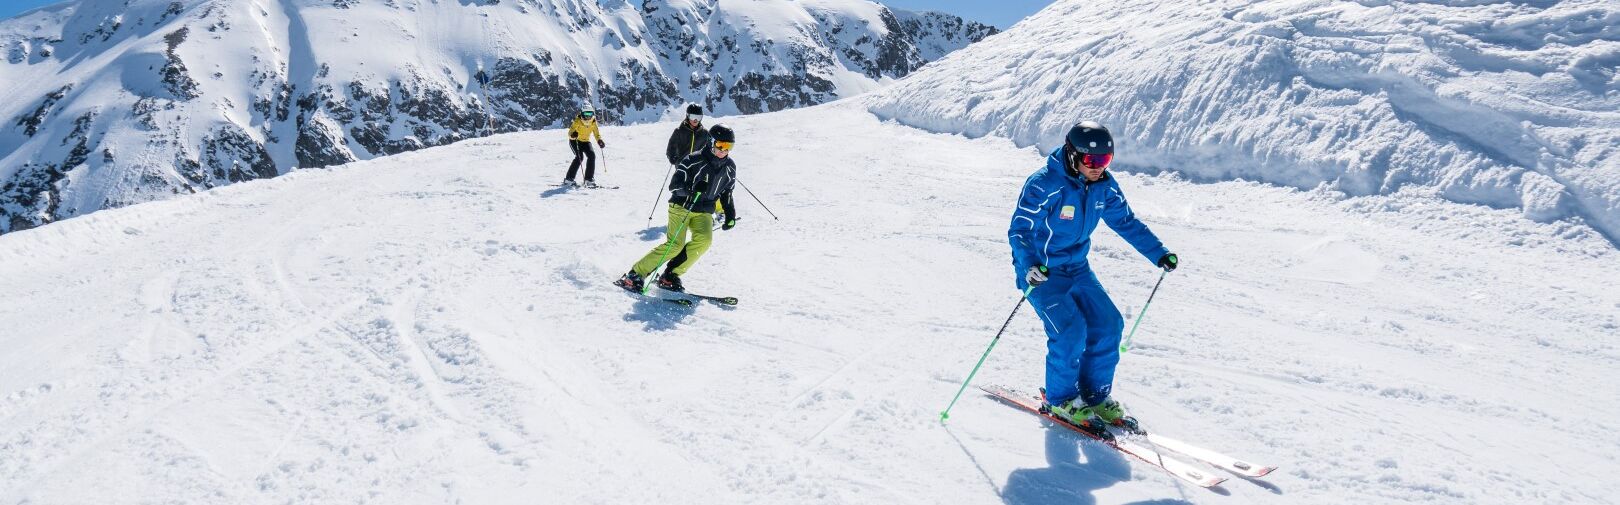 Skicursus Flachau - groepscursussen voor volwassenen